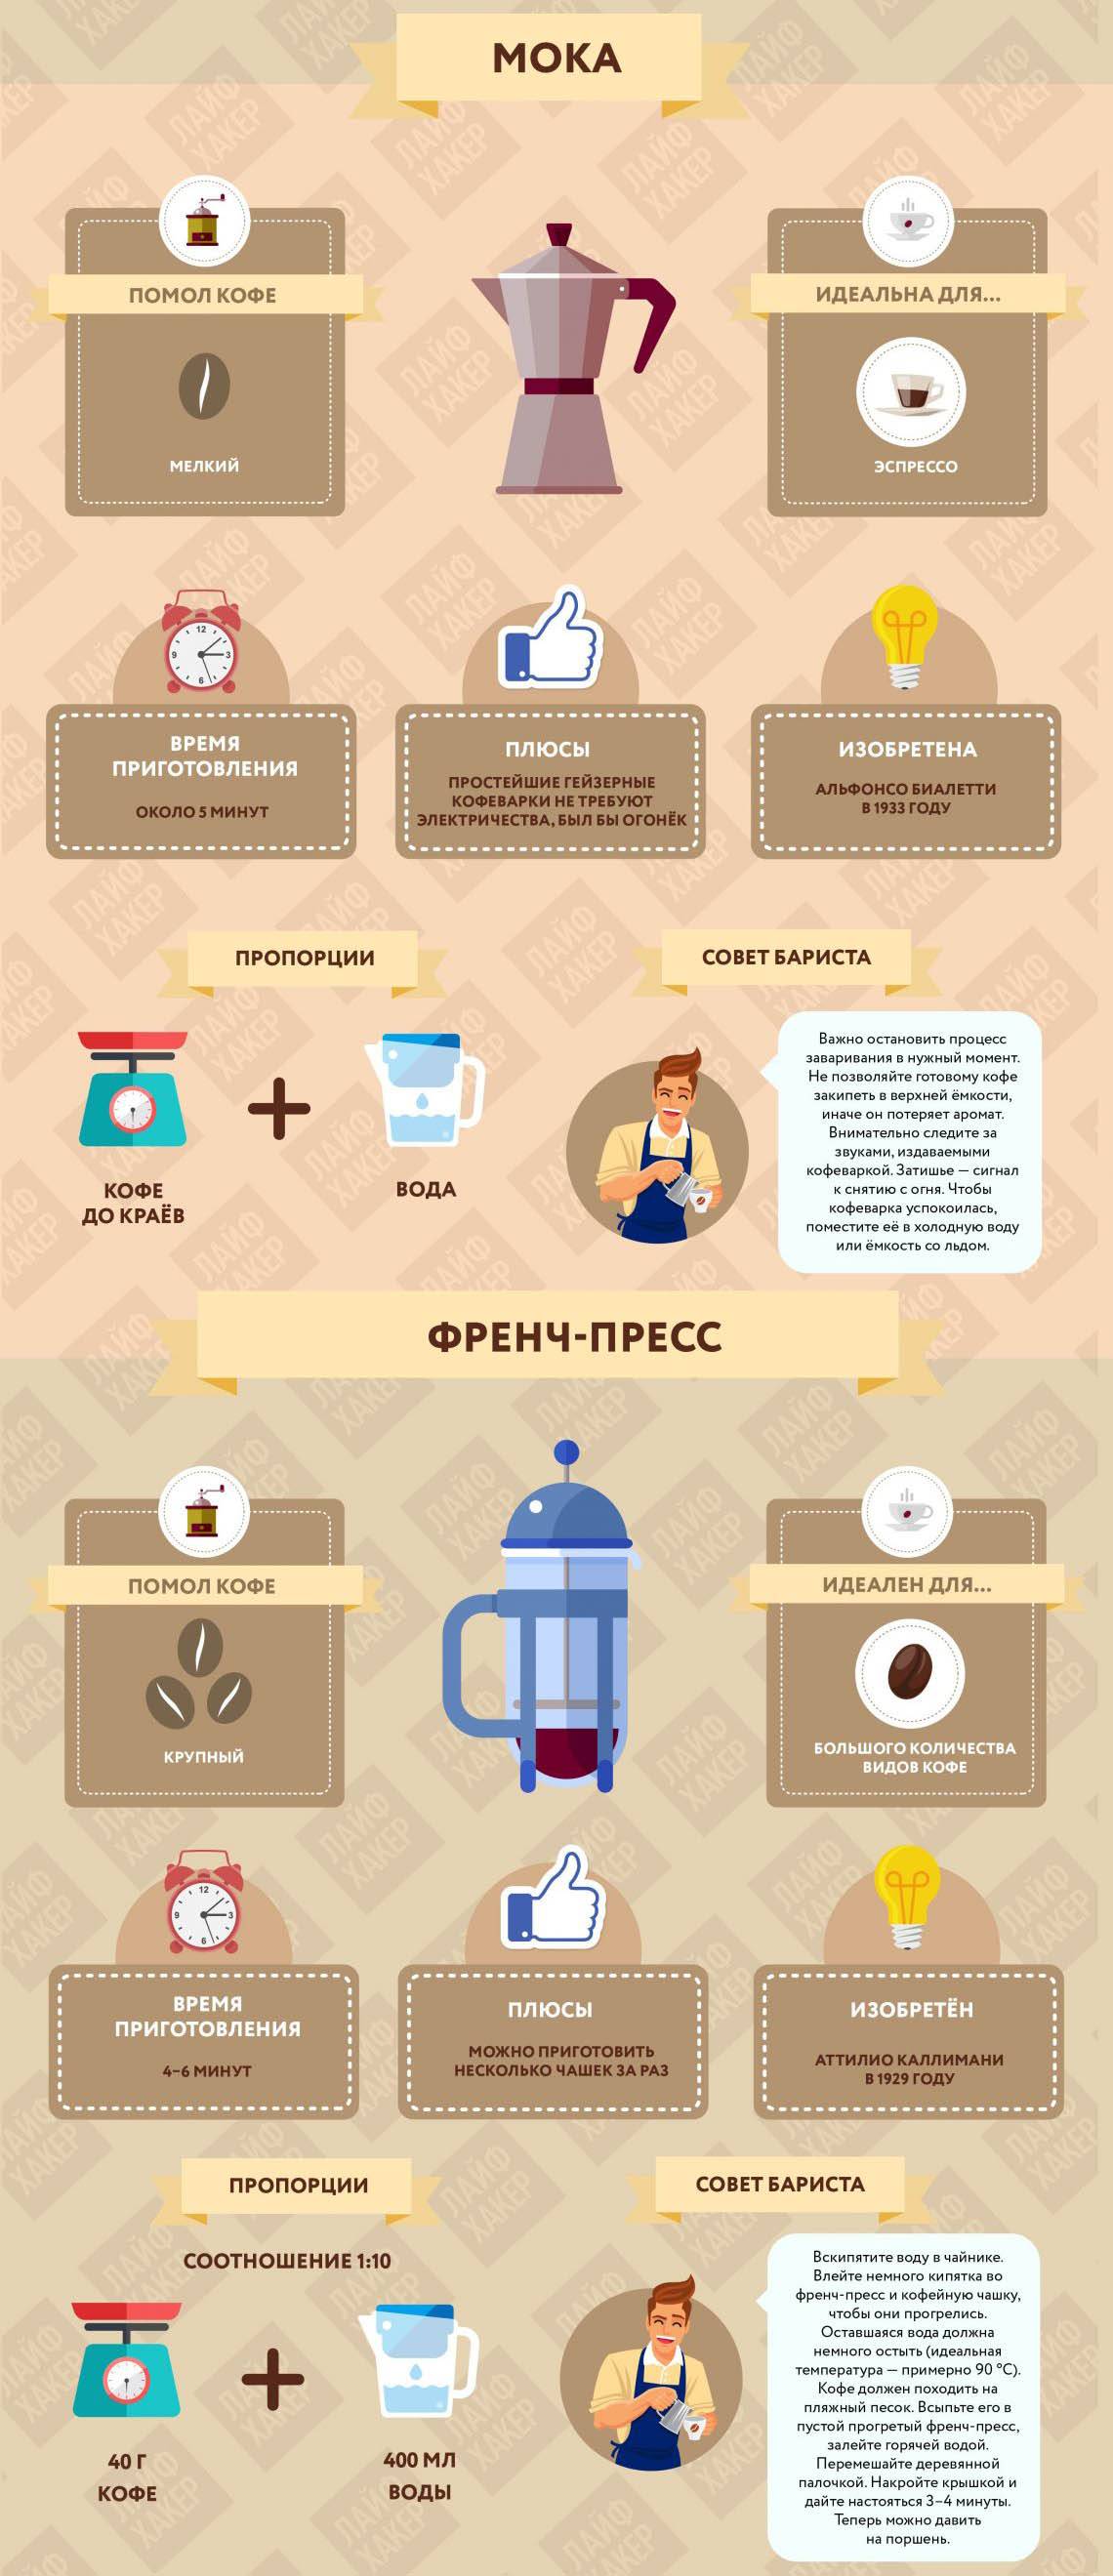 Какую воду использовать в кофейне?